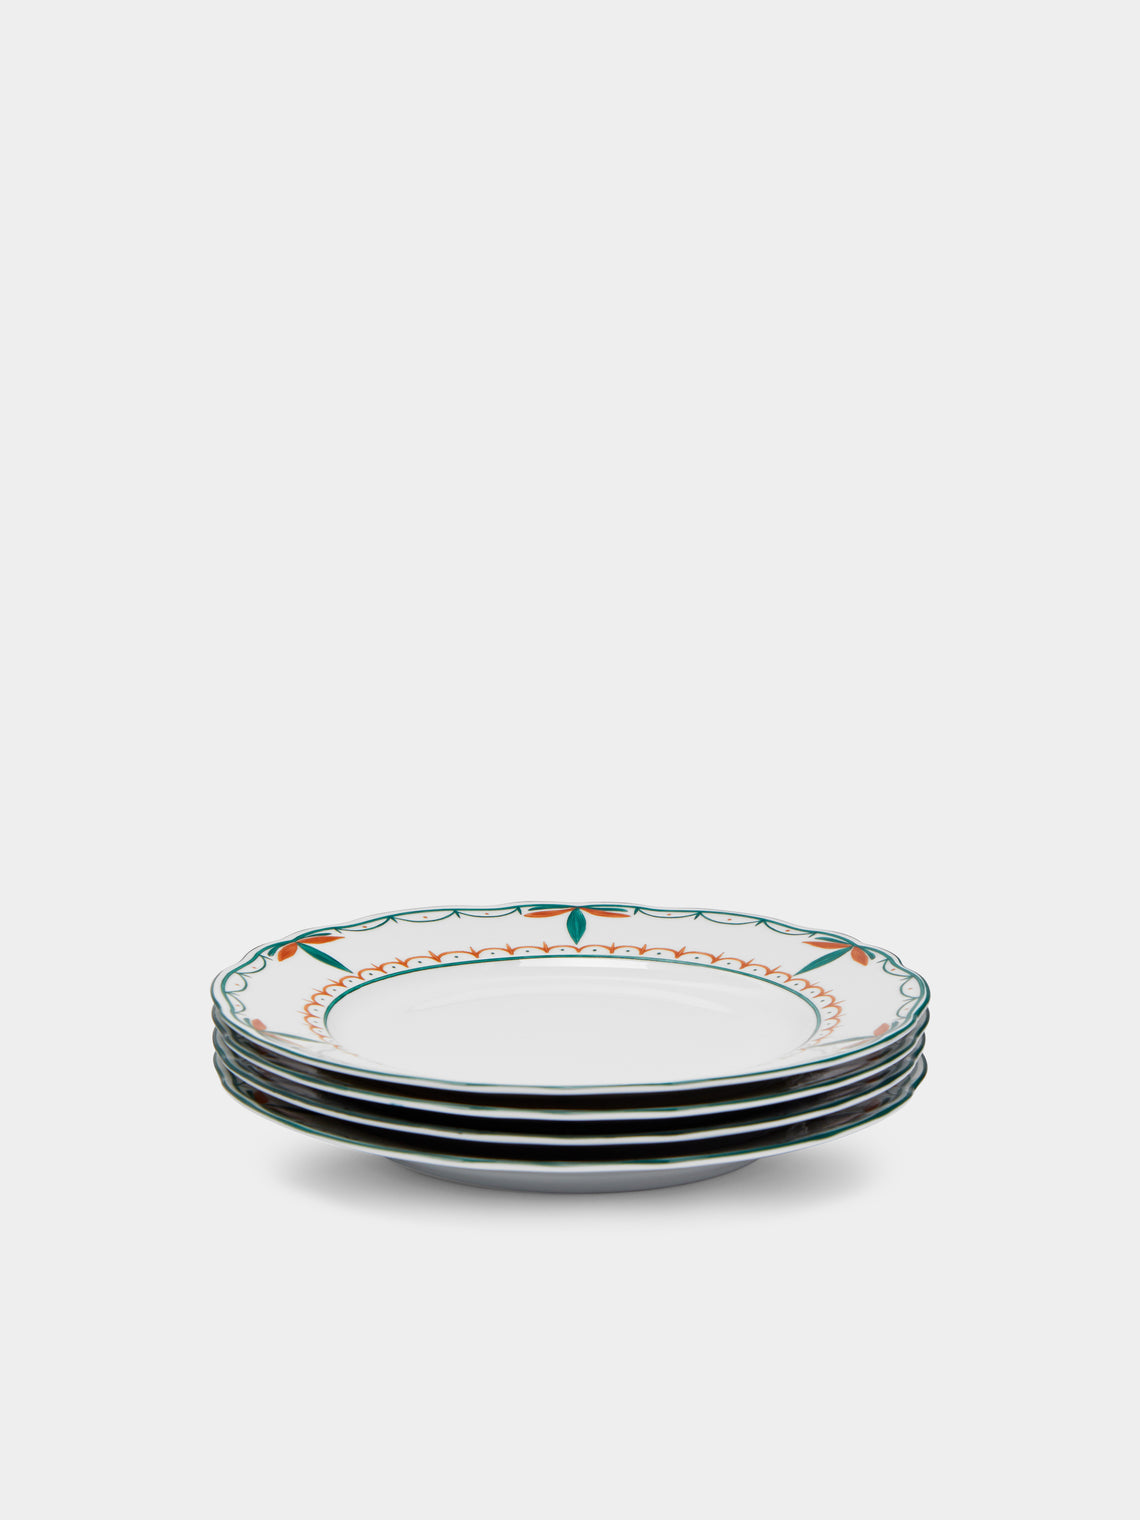 Molecot - Jardin Porcelain Dessert Plates (Set of 4) -  - ABASK